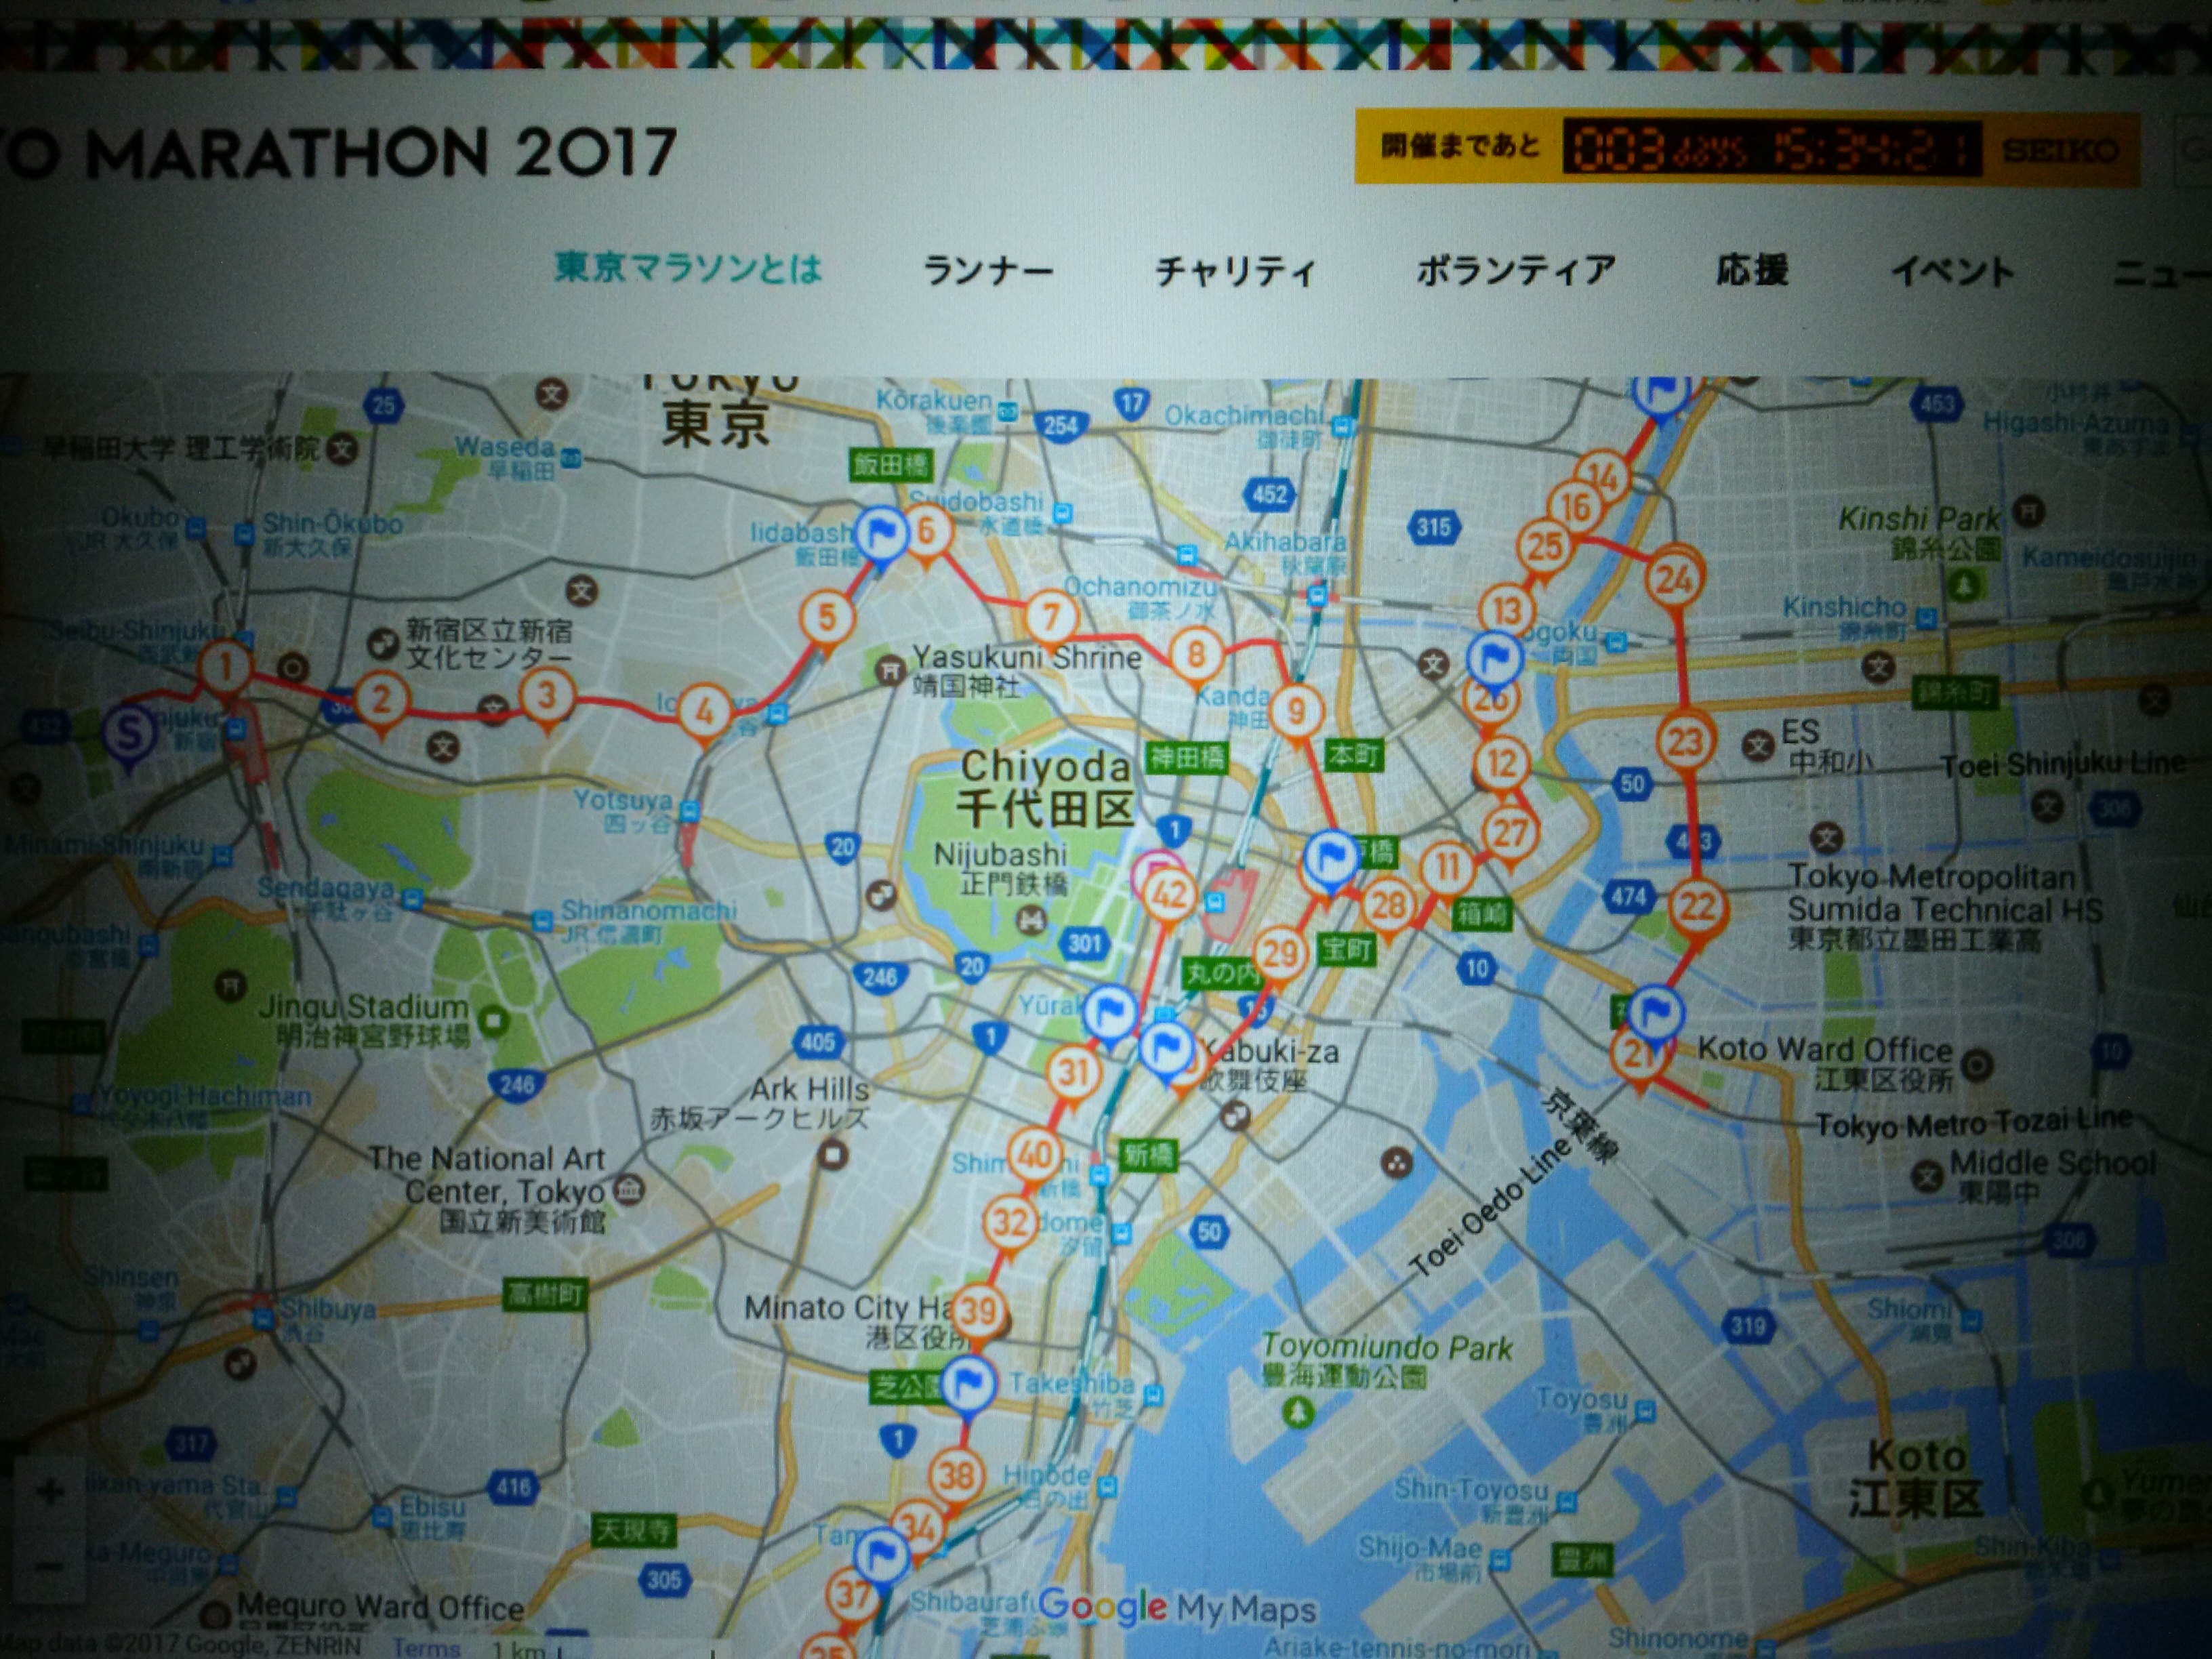 間違い 東京 マラソン コース 【東京マラソン】キプチョゲにハプニング、10キロ過ぎでコース間違えそうに 給水場で勘違い